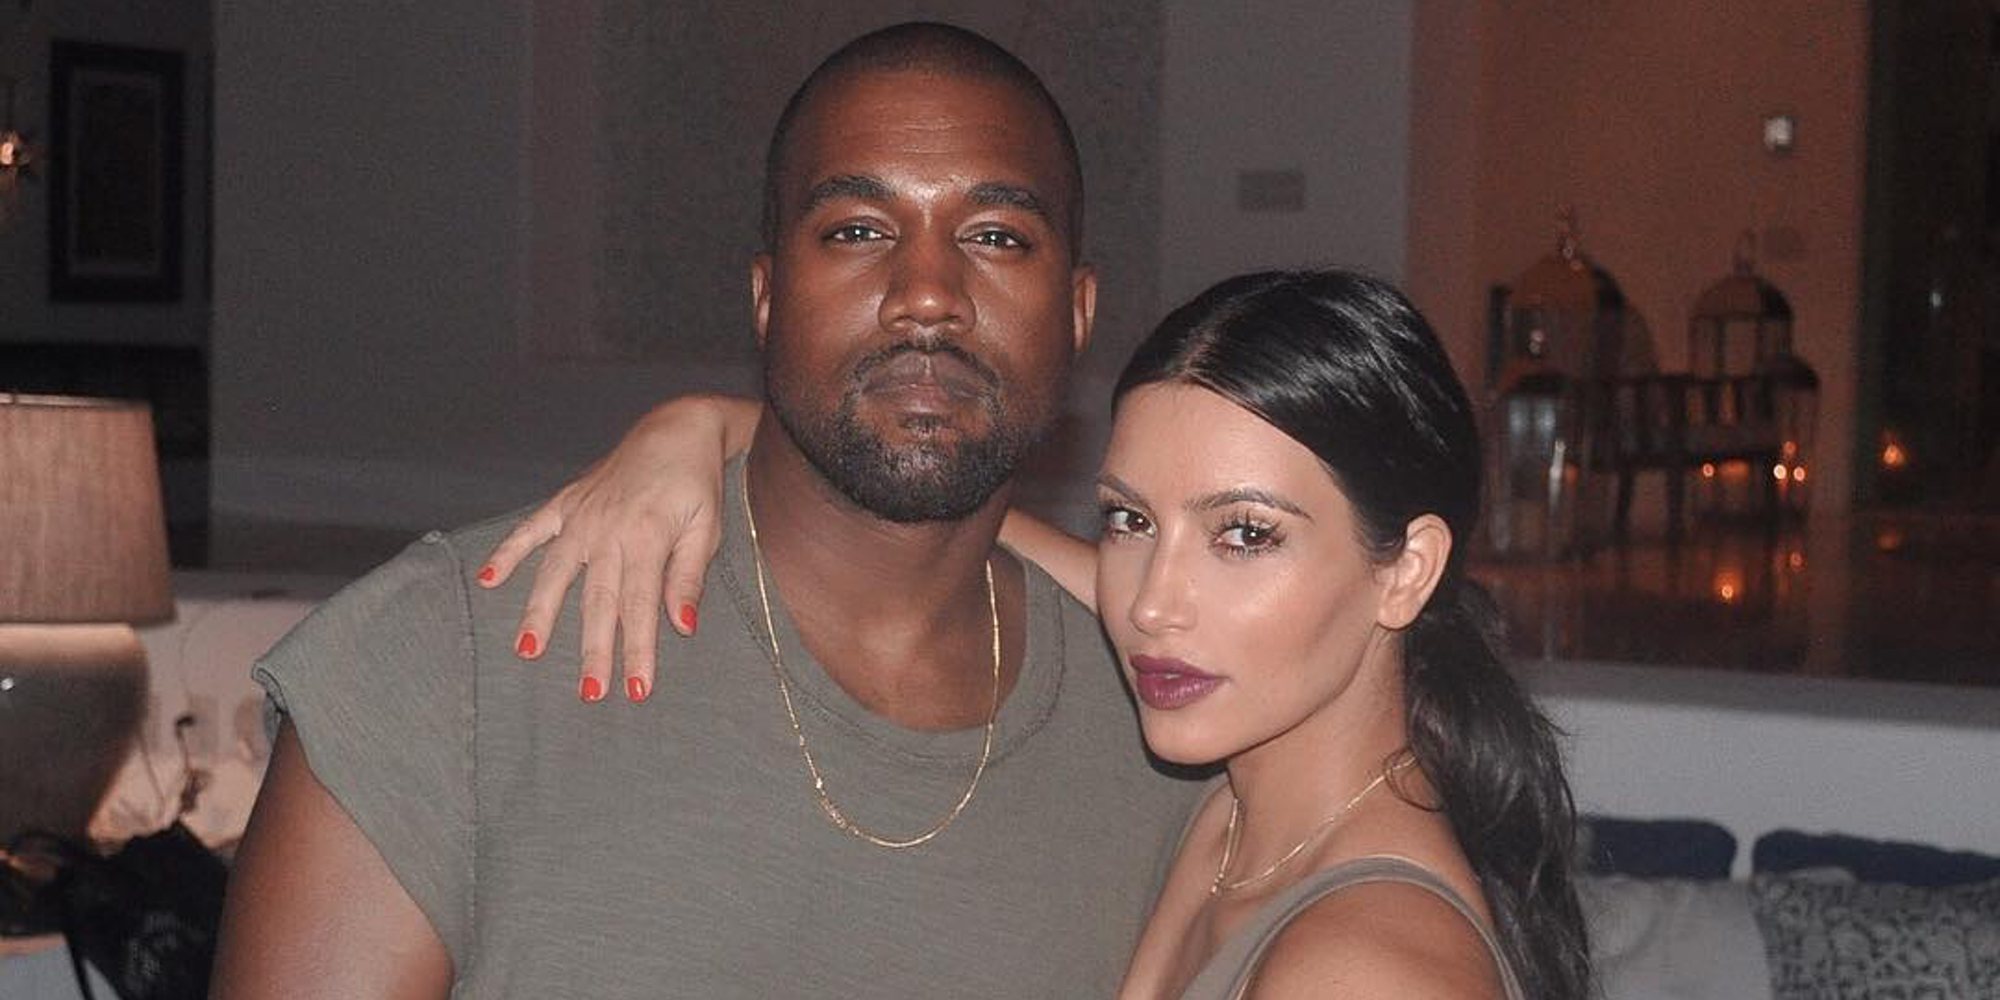 La crisis que casi acaba con el matrimonio de Kim Kardashian y Kanye West: "No tengo mucho más que dar"